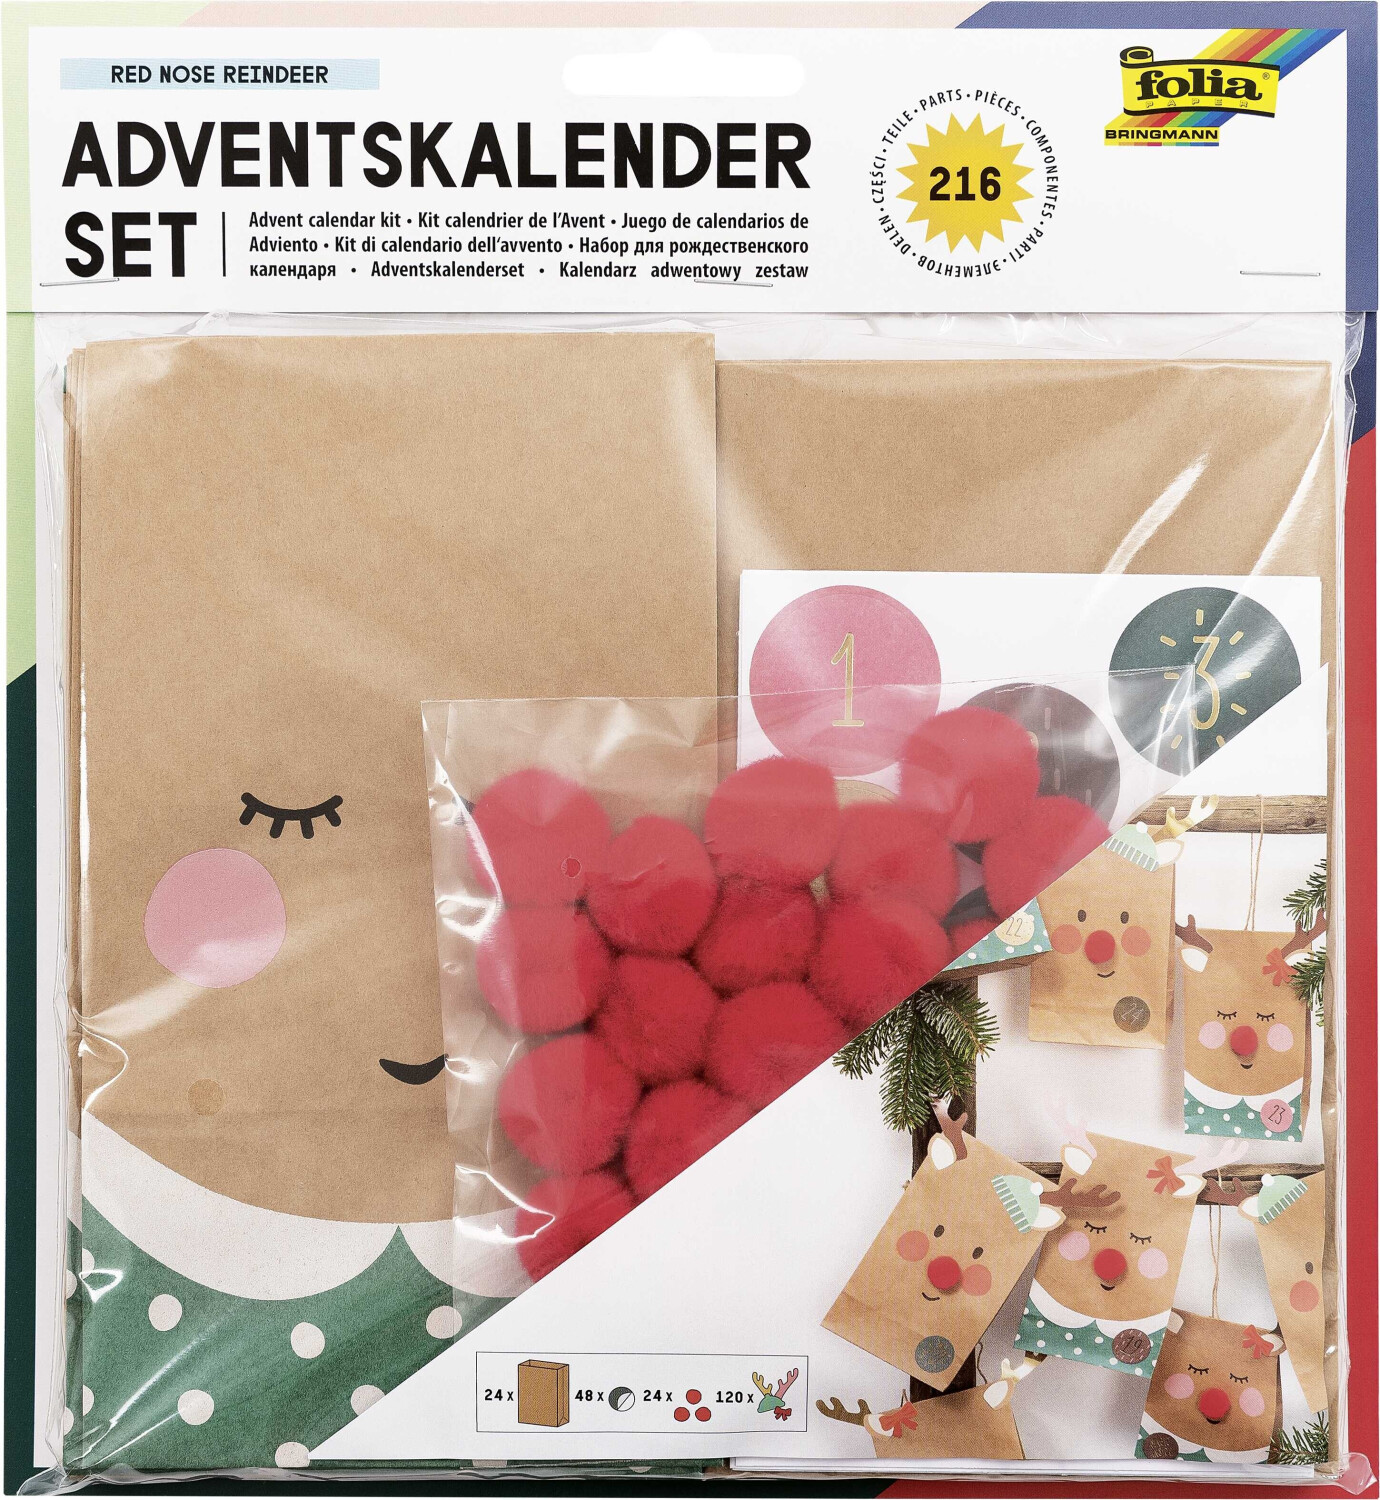 Folia Adventskalender Set Red Nose Reindeer ab 7,45 €